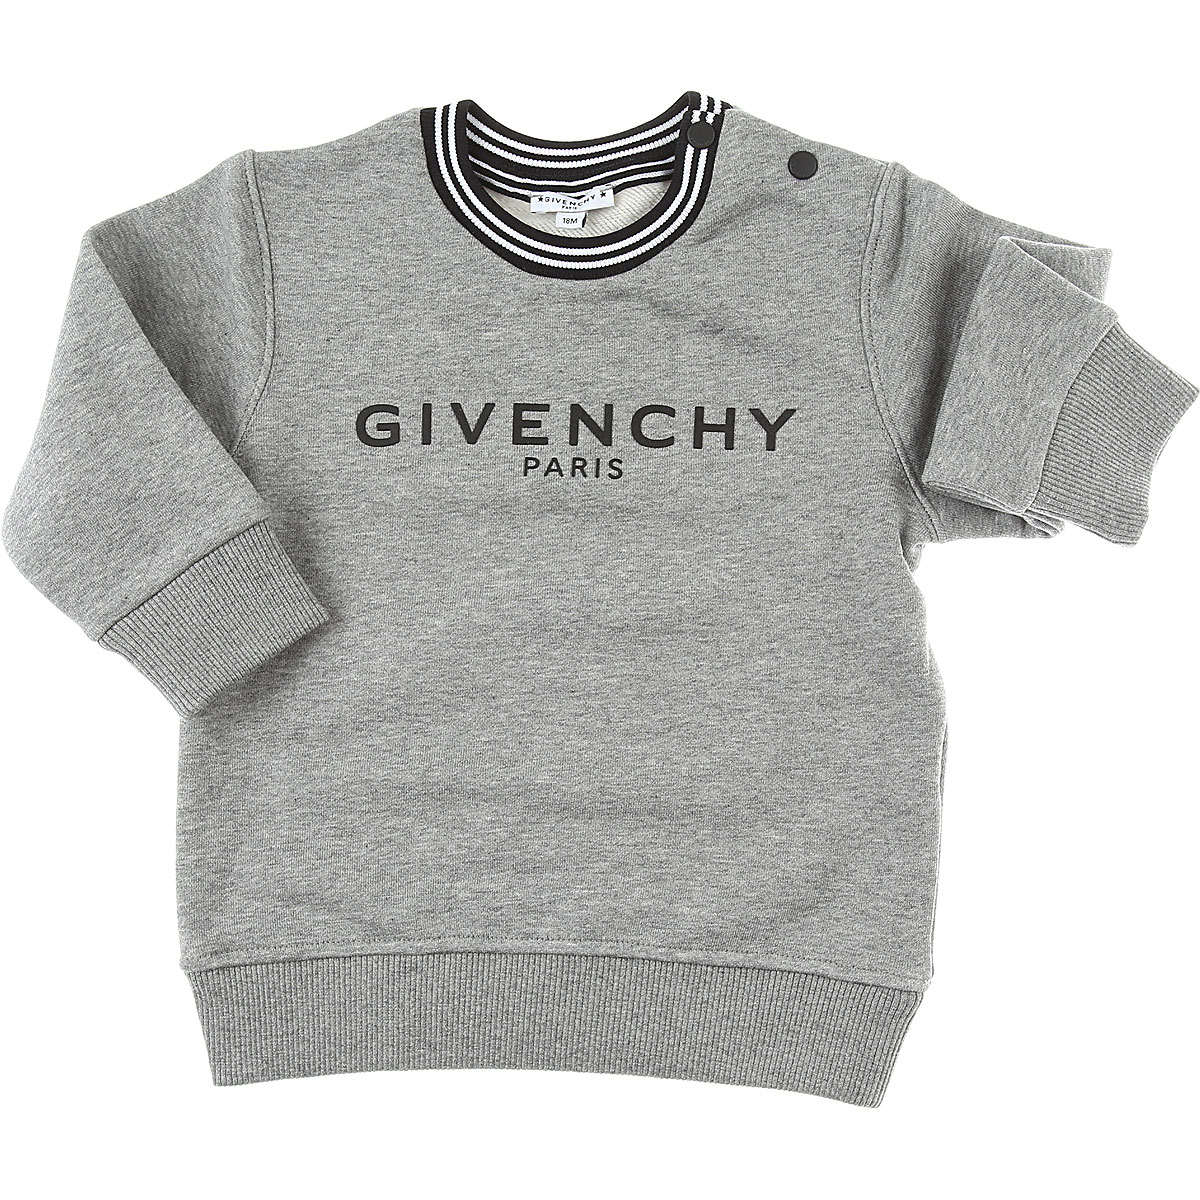 Givenchy Baby Sweatshirt & Kapuzenpullover für Jungen Günstig im Sale, Grau, Baumwolle, 2017, 12 M 18M 3Y